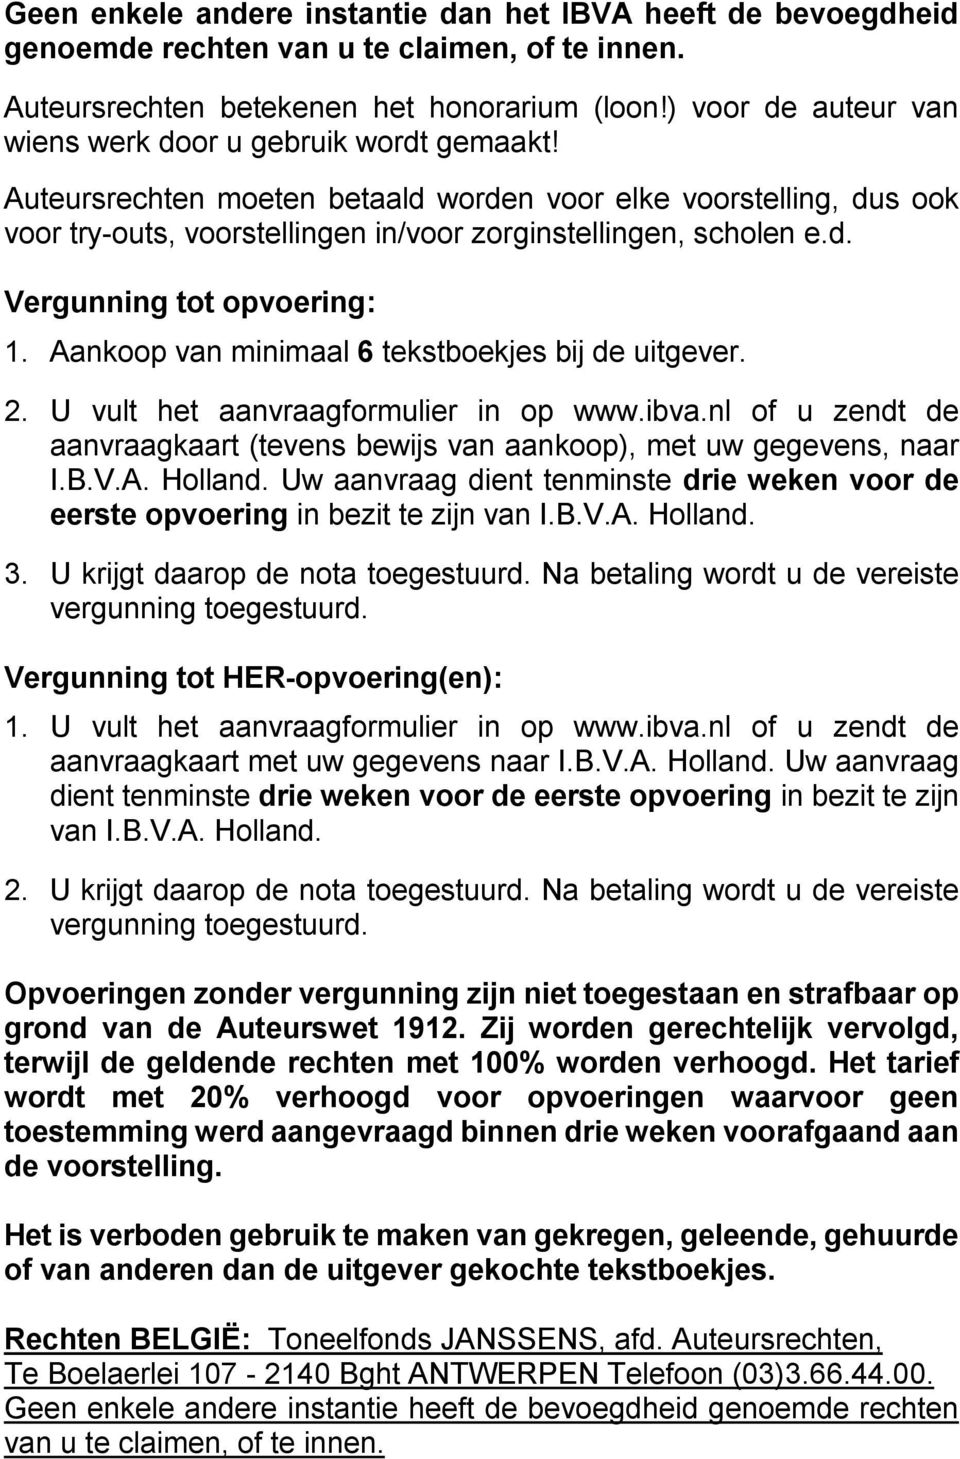 Aankoop van minimaal 6 tekstboekjes bij de uitgever. 2. U vult het aanvraagformulier in op www.ibva.nl of u zendt de aanvraagkaart (tevens bewijs van aankoop), met uw gegevens, naar I.B.V.A. Holland.